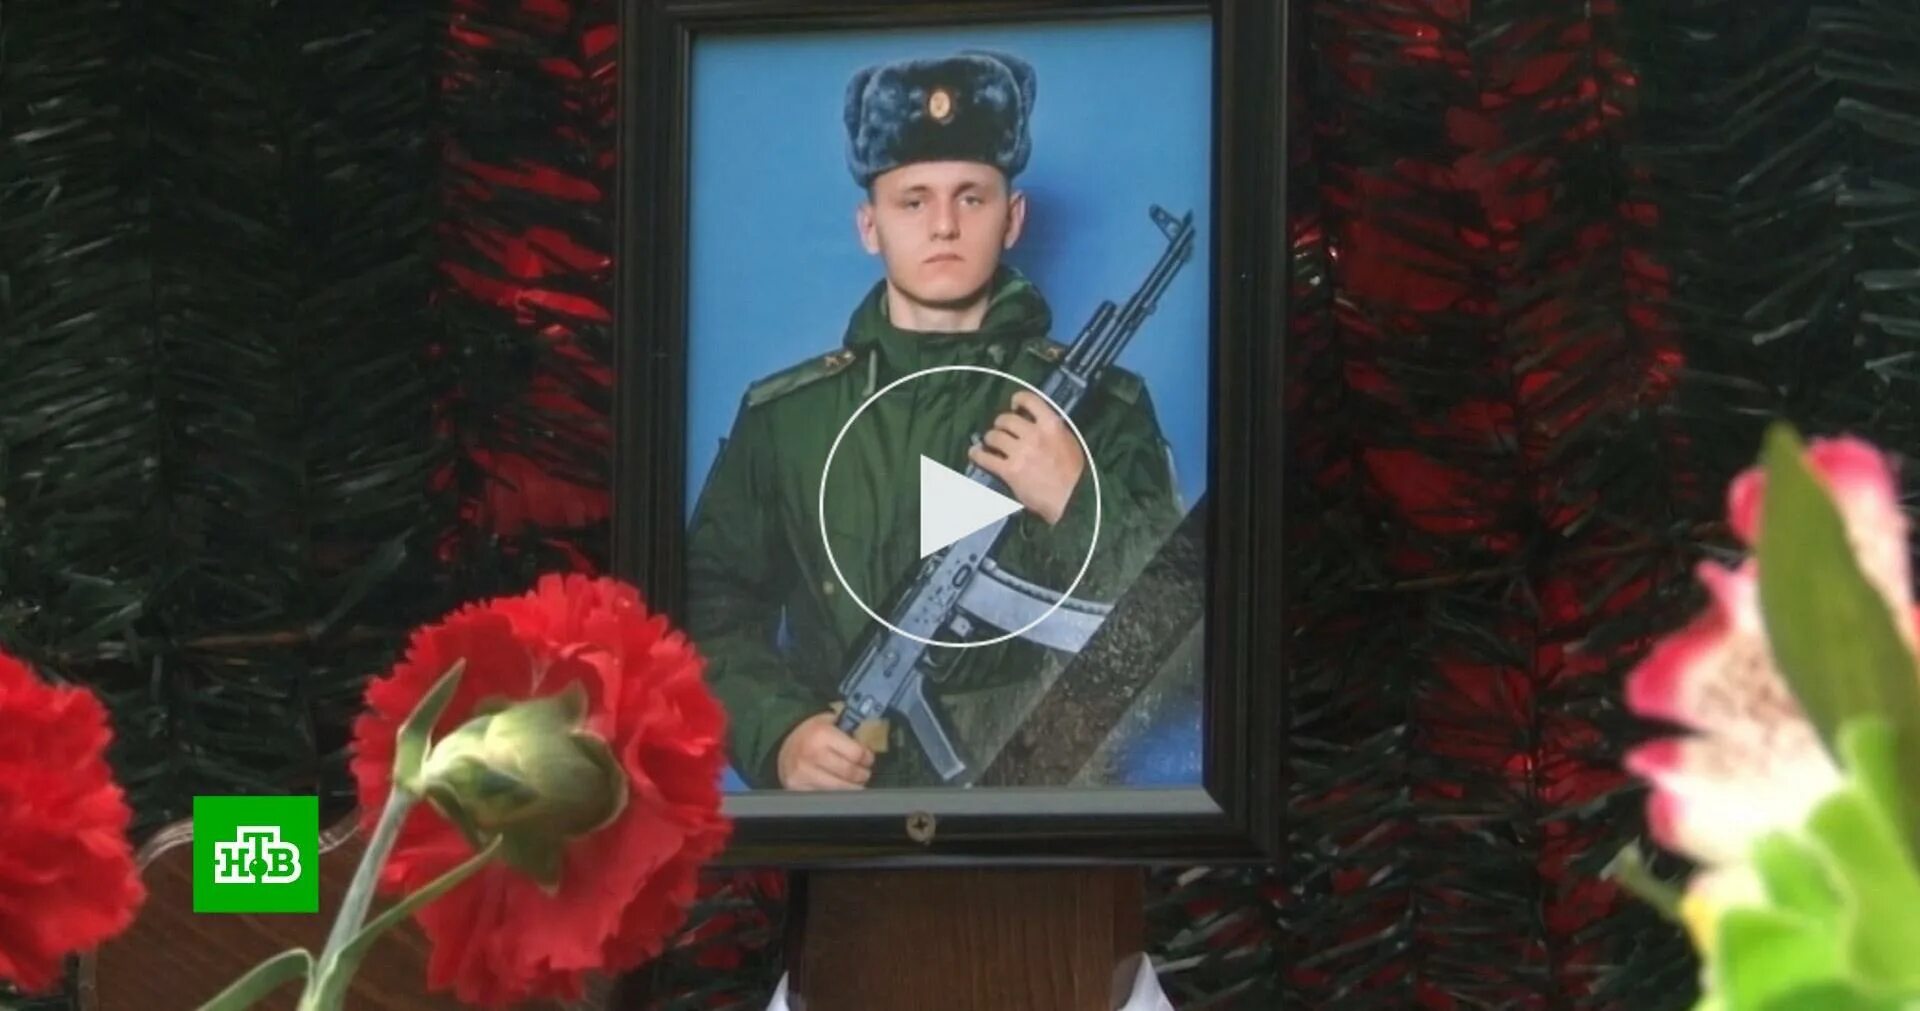 Сын пореченкова на сво правда. Гибель военнослужащих. Убитые украинские военные.